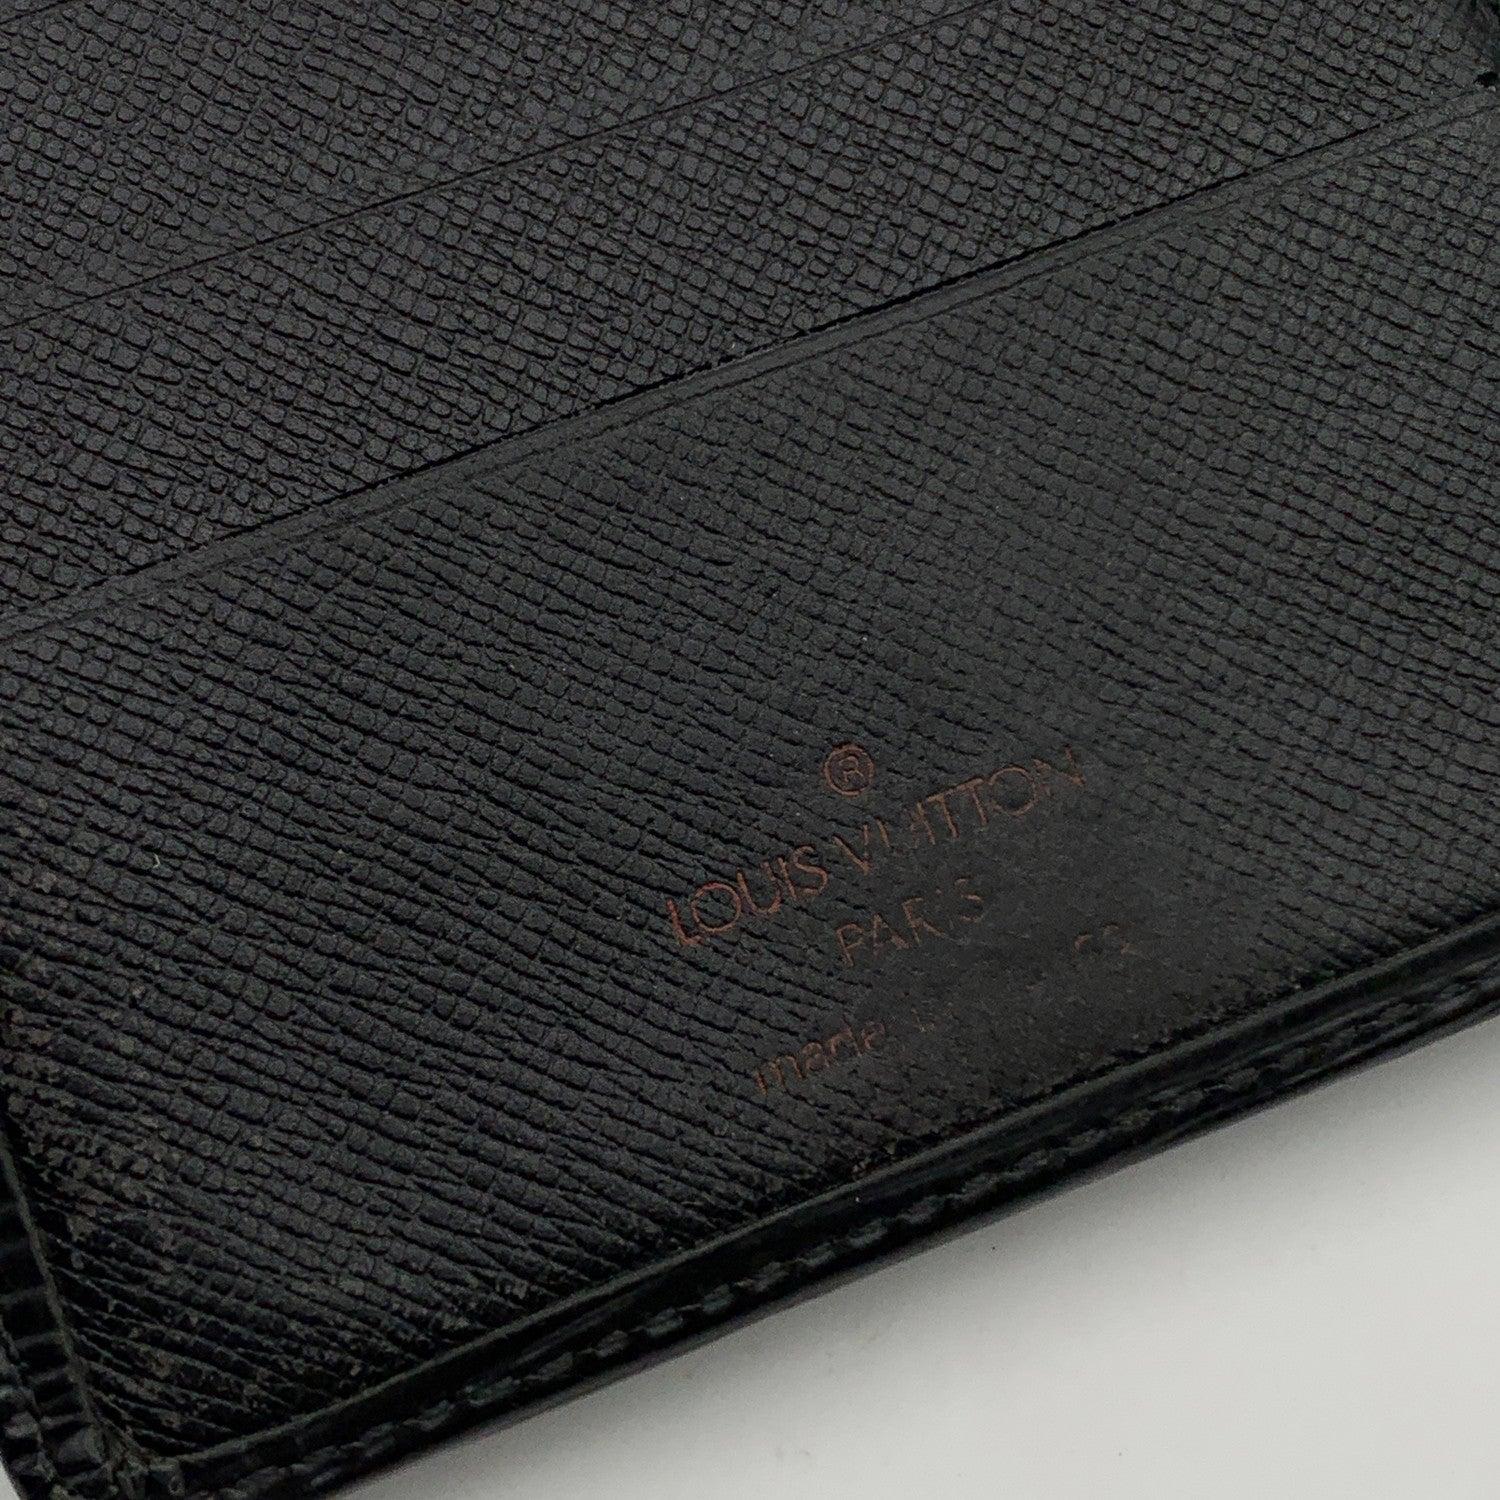 Louis Vuitton Vintage Black Epi Leather Compact Wallet Coin Purse 2